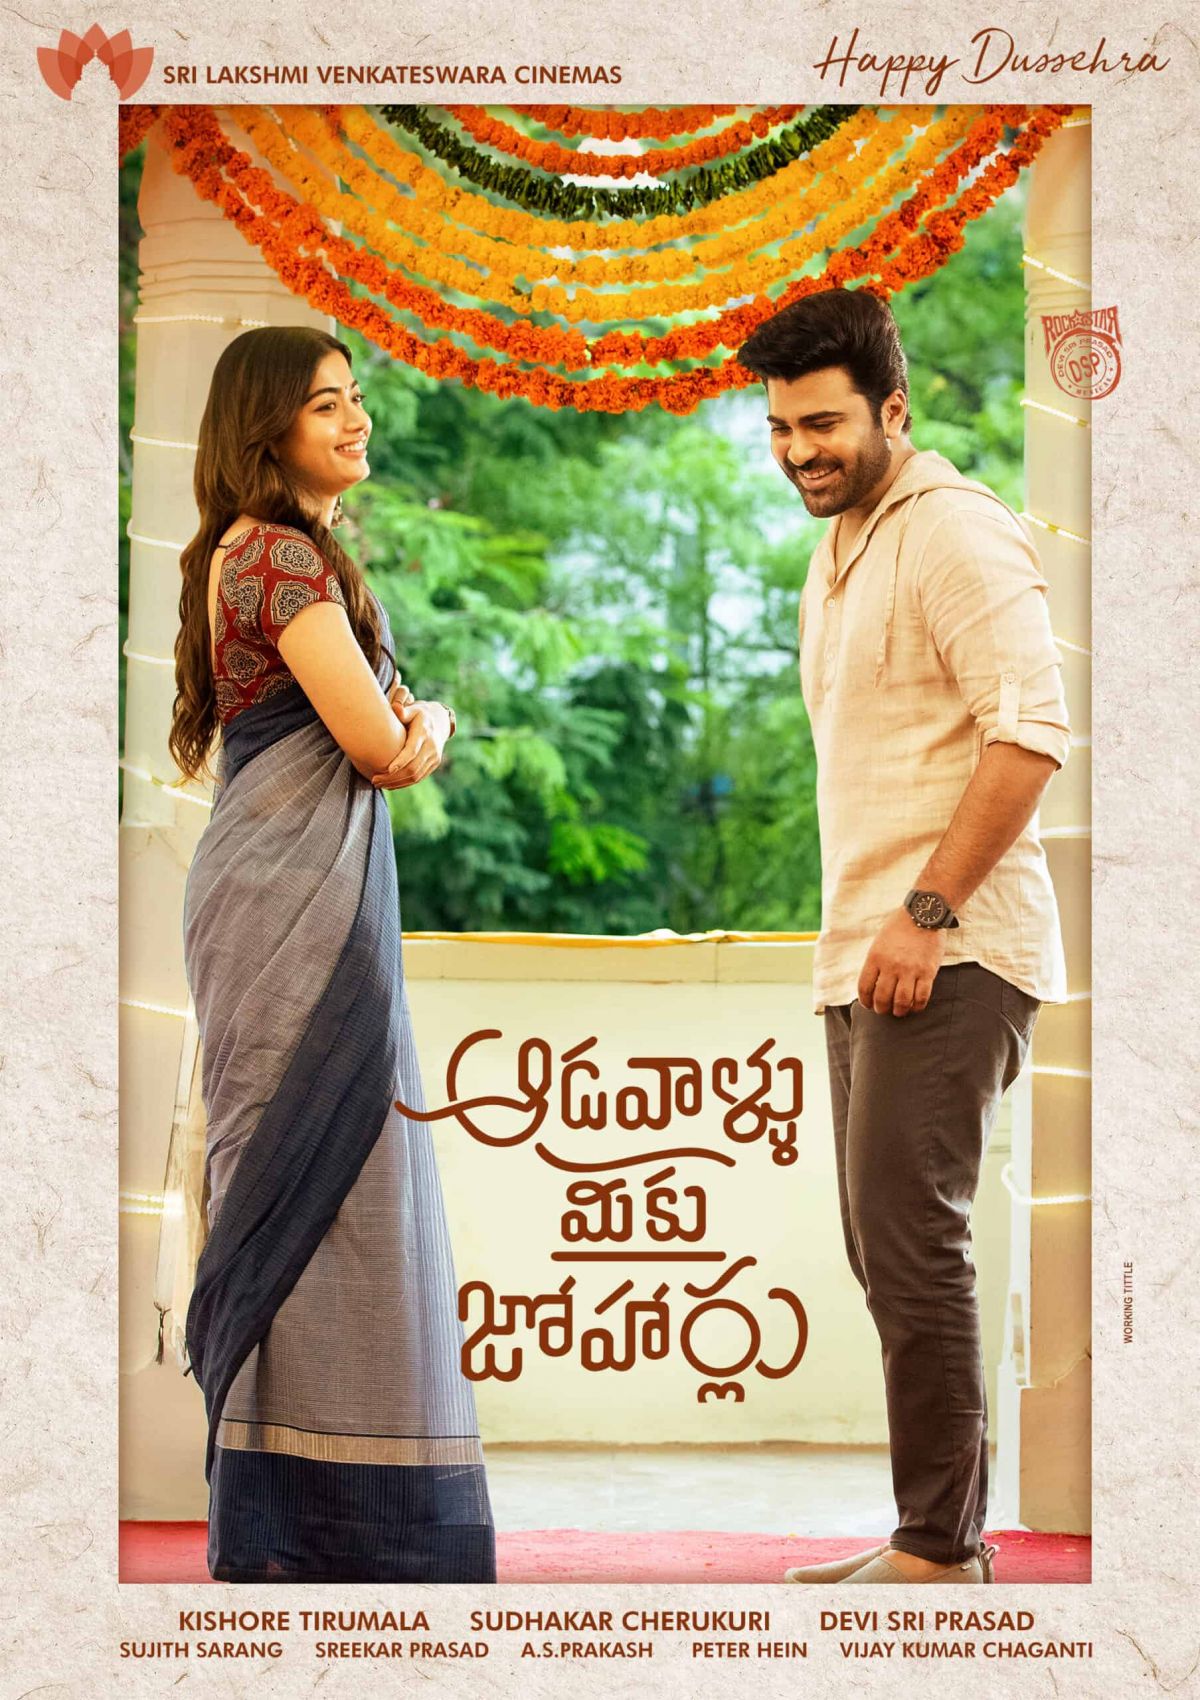 Makers Of 'Aadavallu Meeku Johaarlu' Announces Release date With New Poster